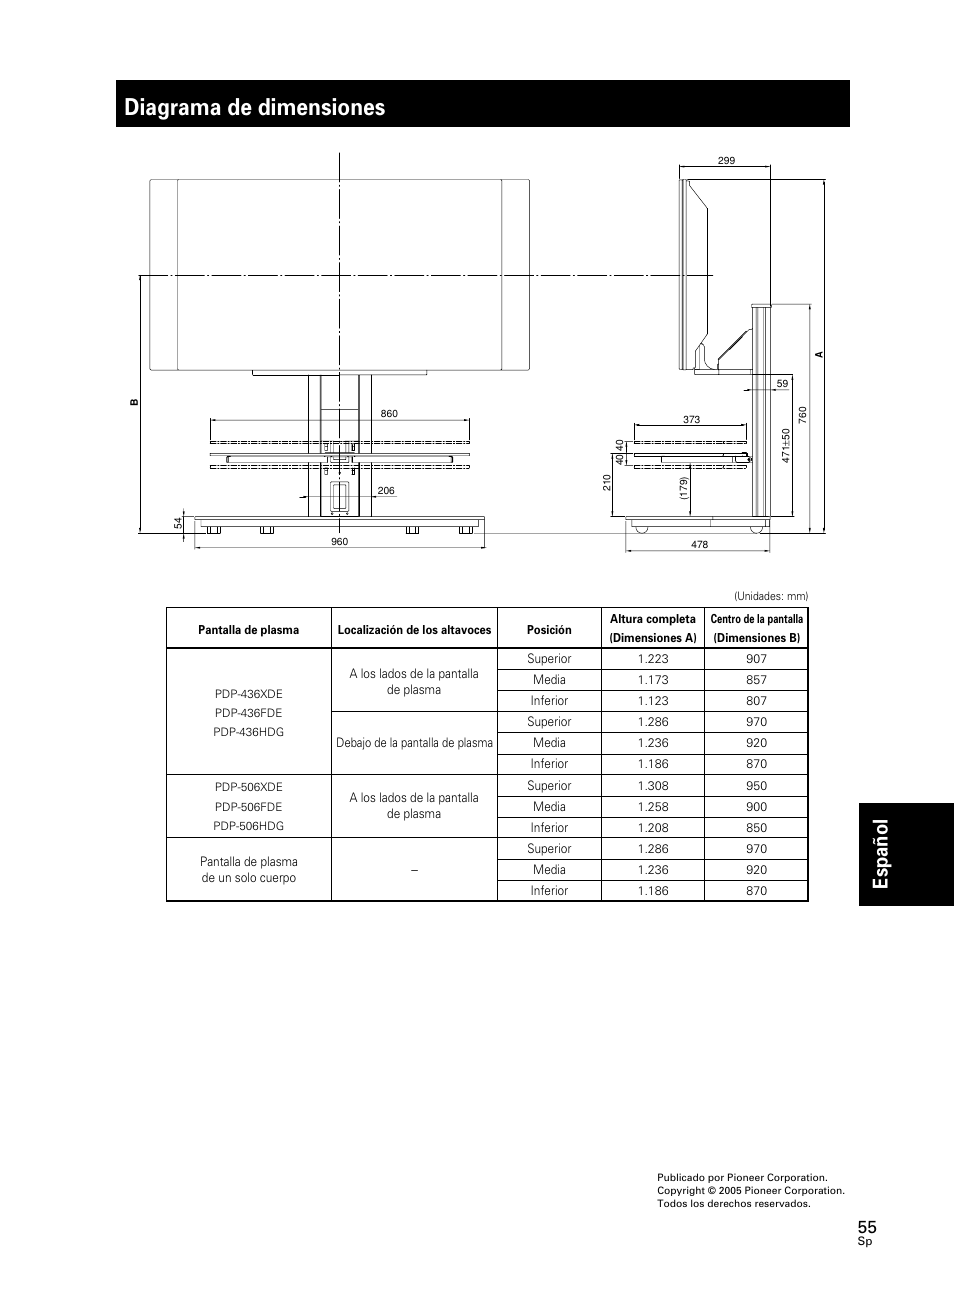 Diagrama de dimensiones, Espa ñ ol | Pioneer PDK-FS05 User Manual | Page 55 / 63